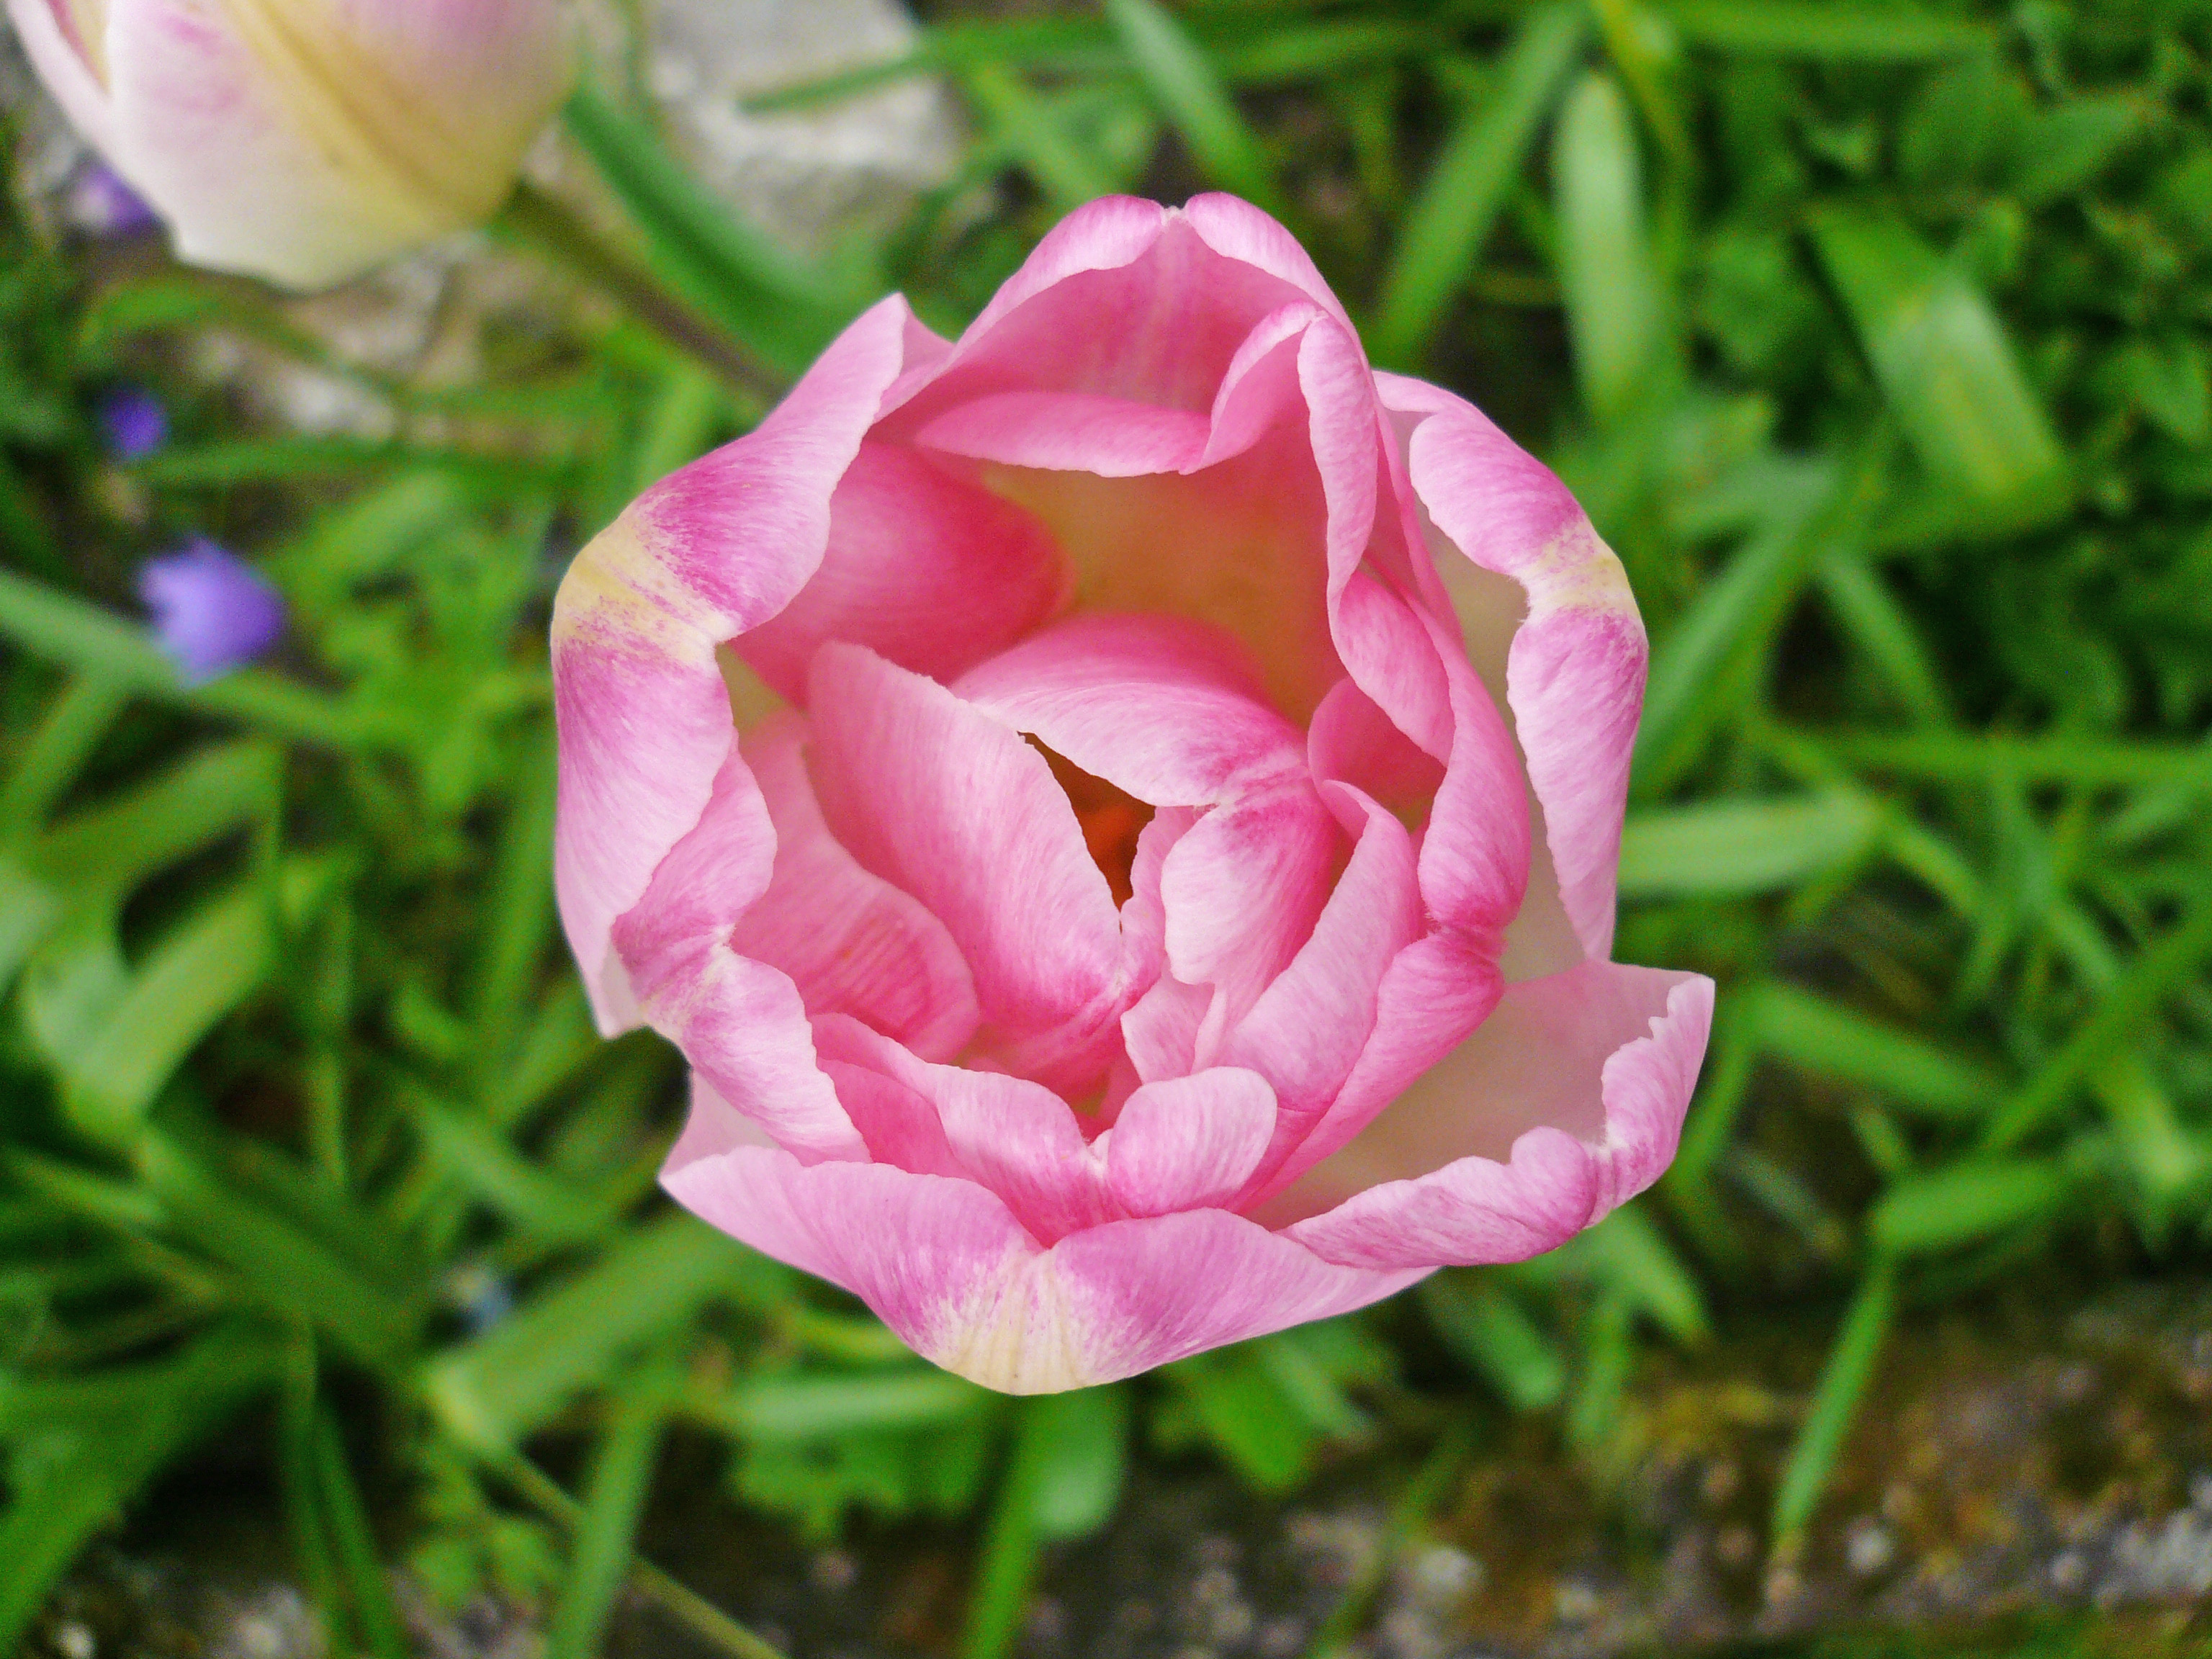 04 16 Tulpe rosa-weiß von oben a.jpg